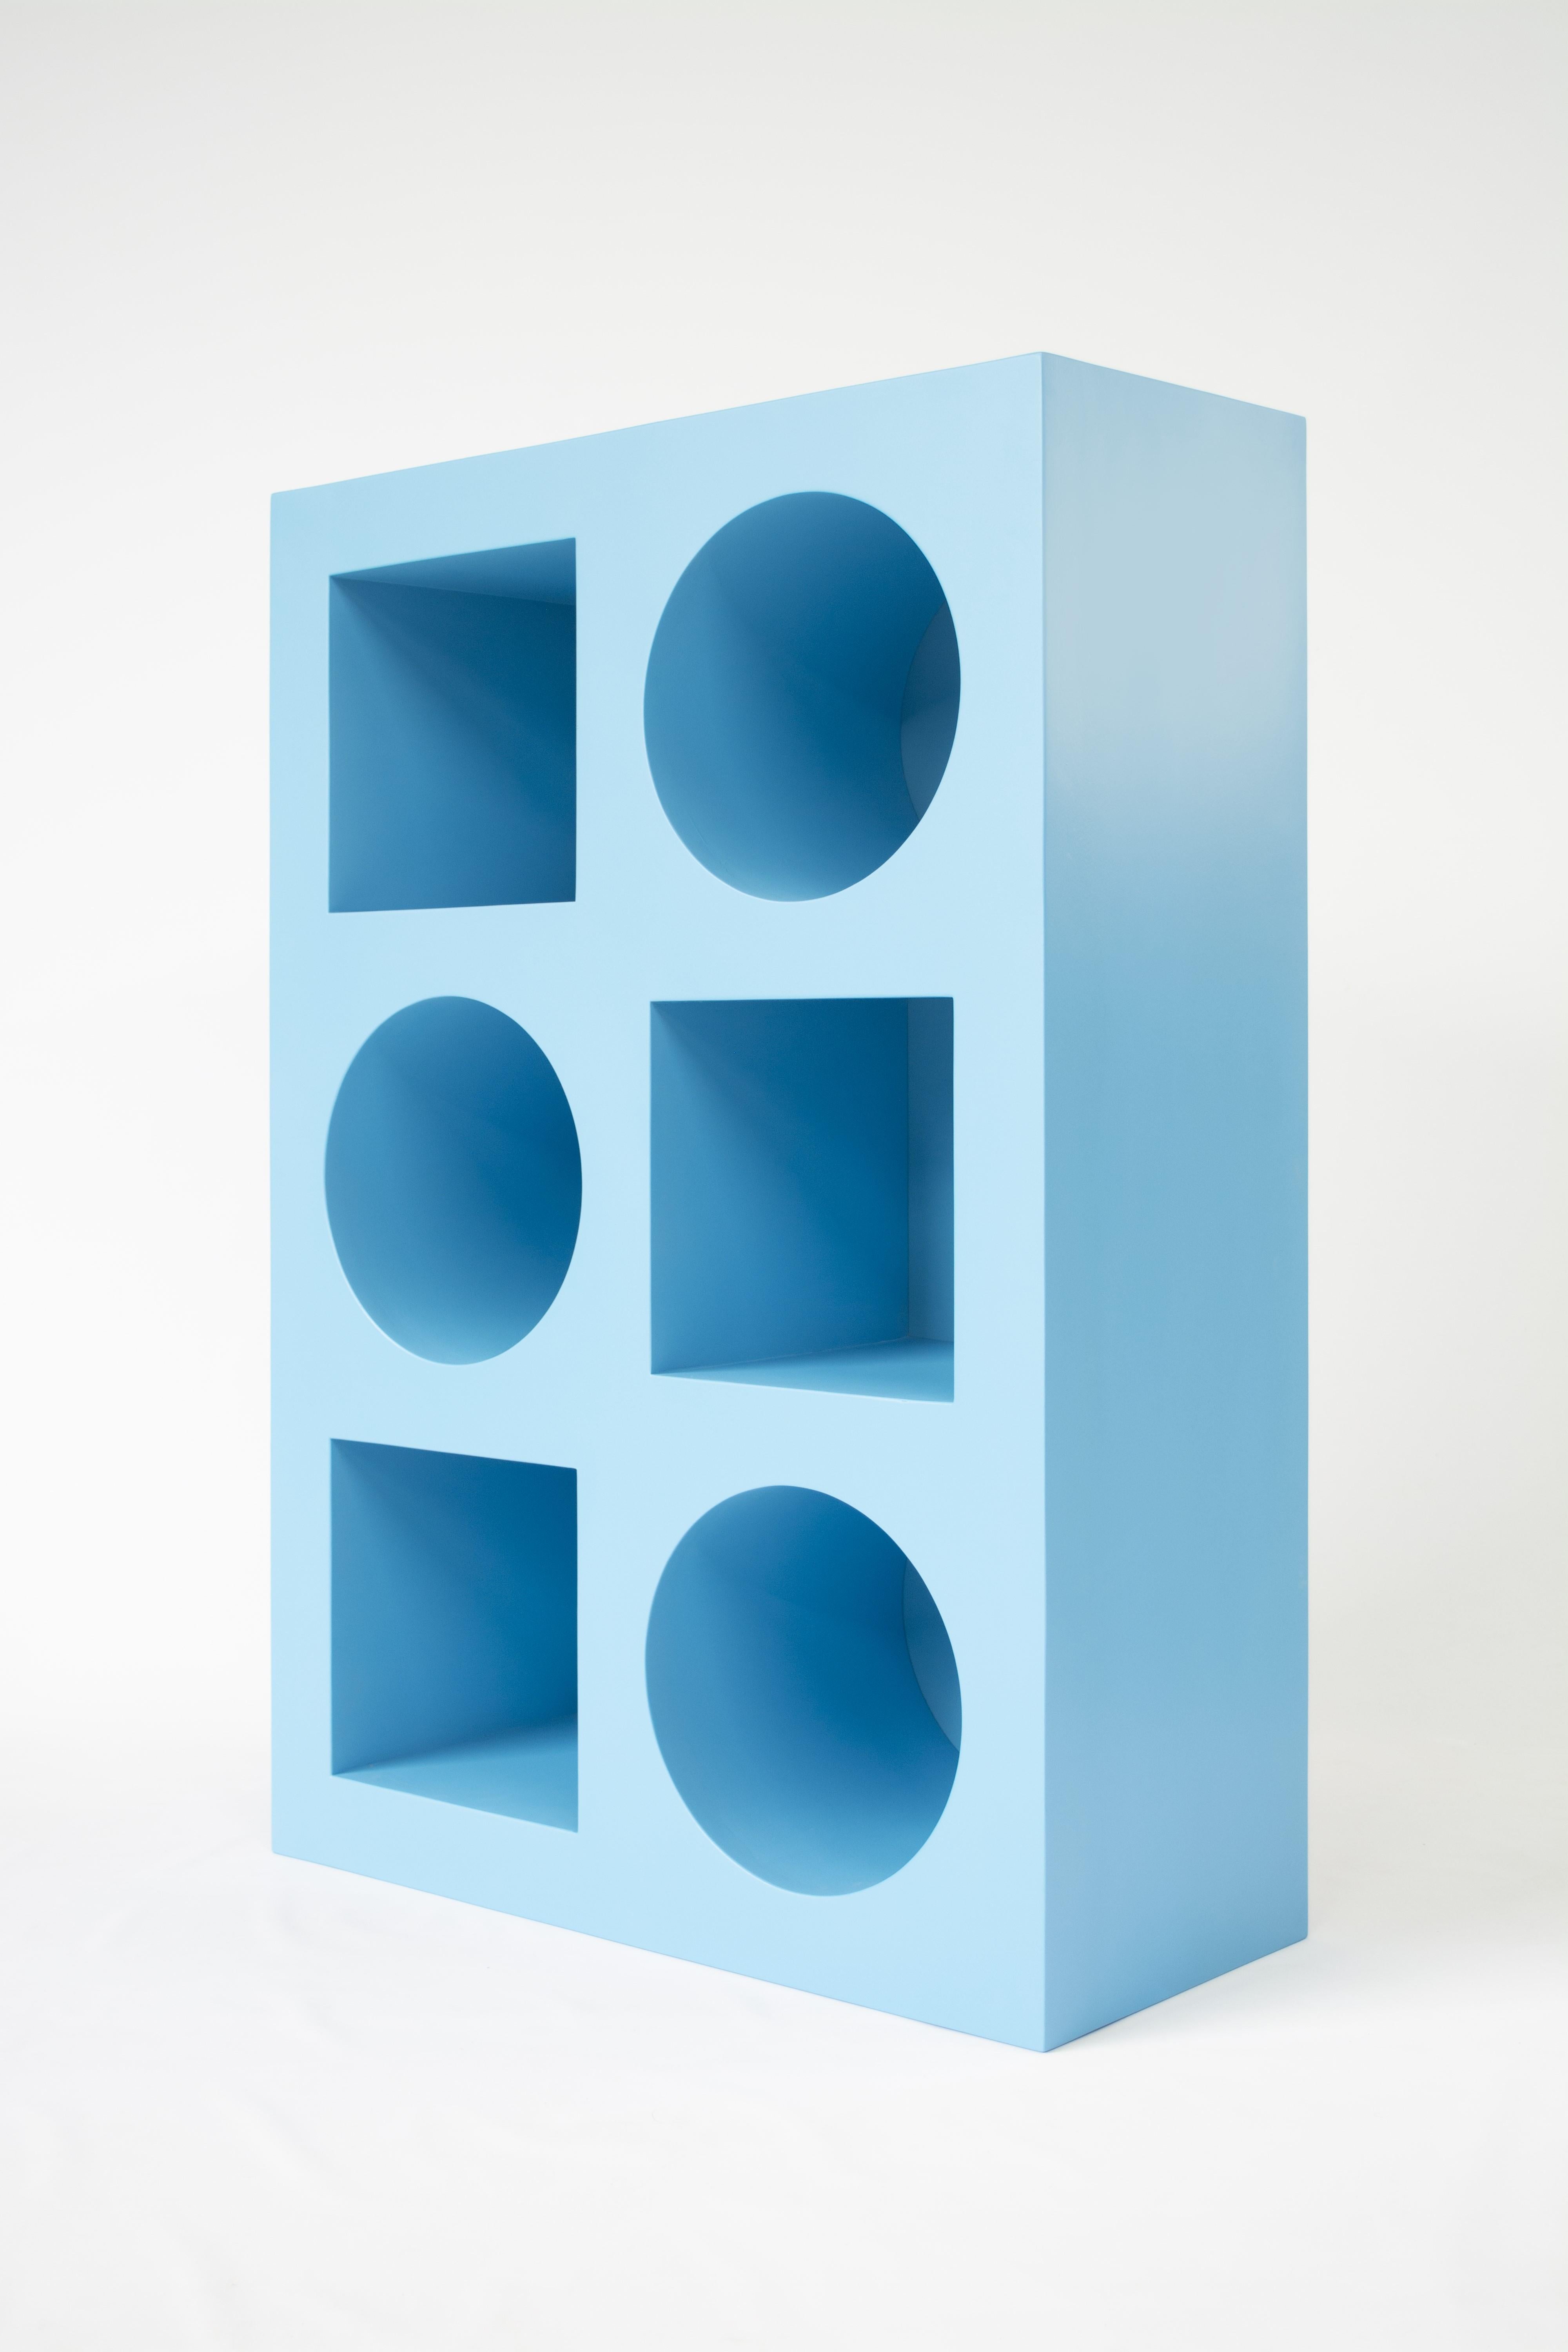 American Ellen Bookcase - 2x3 size - by KLN Studio For Sale